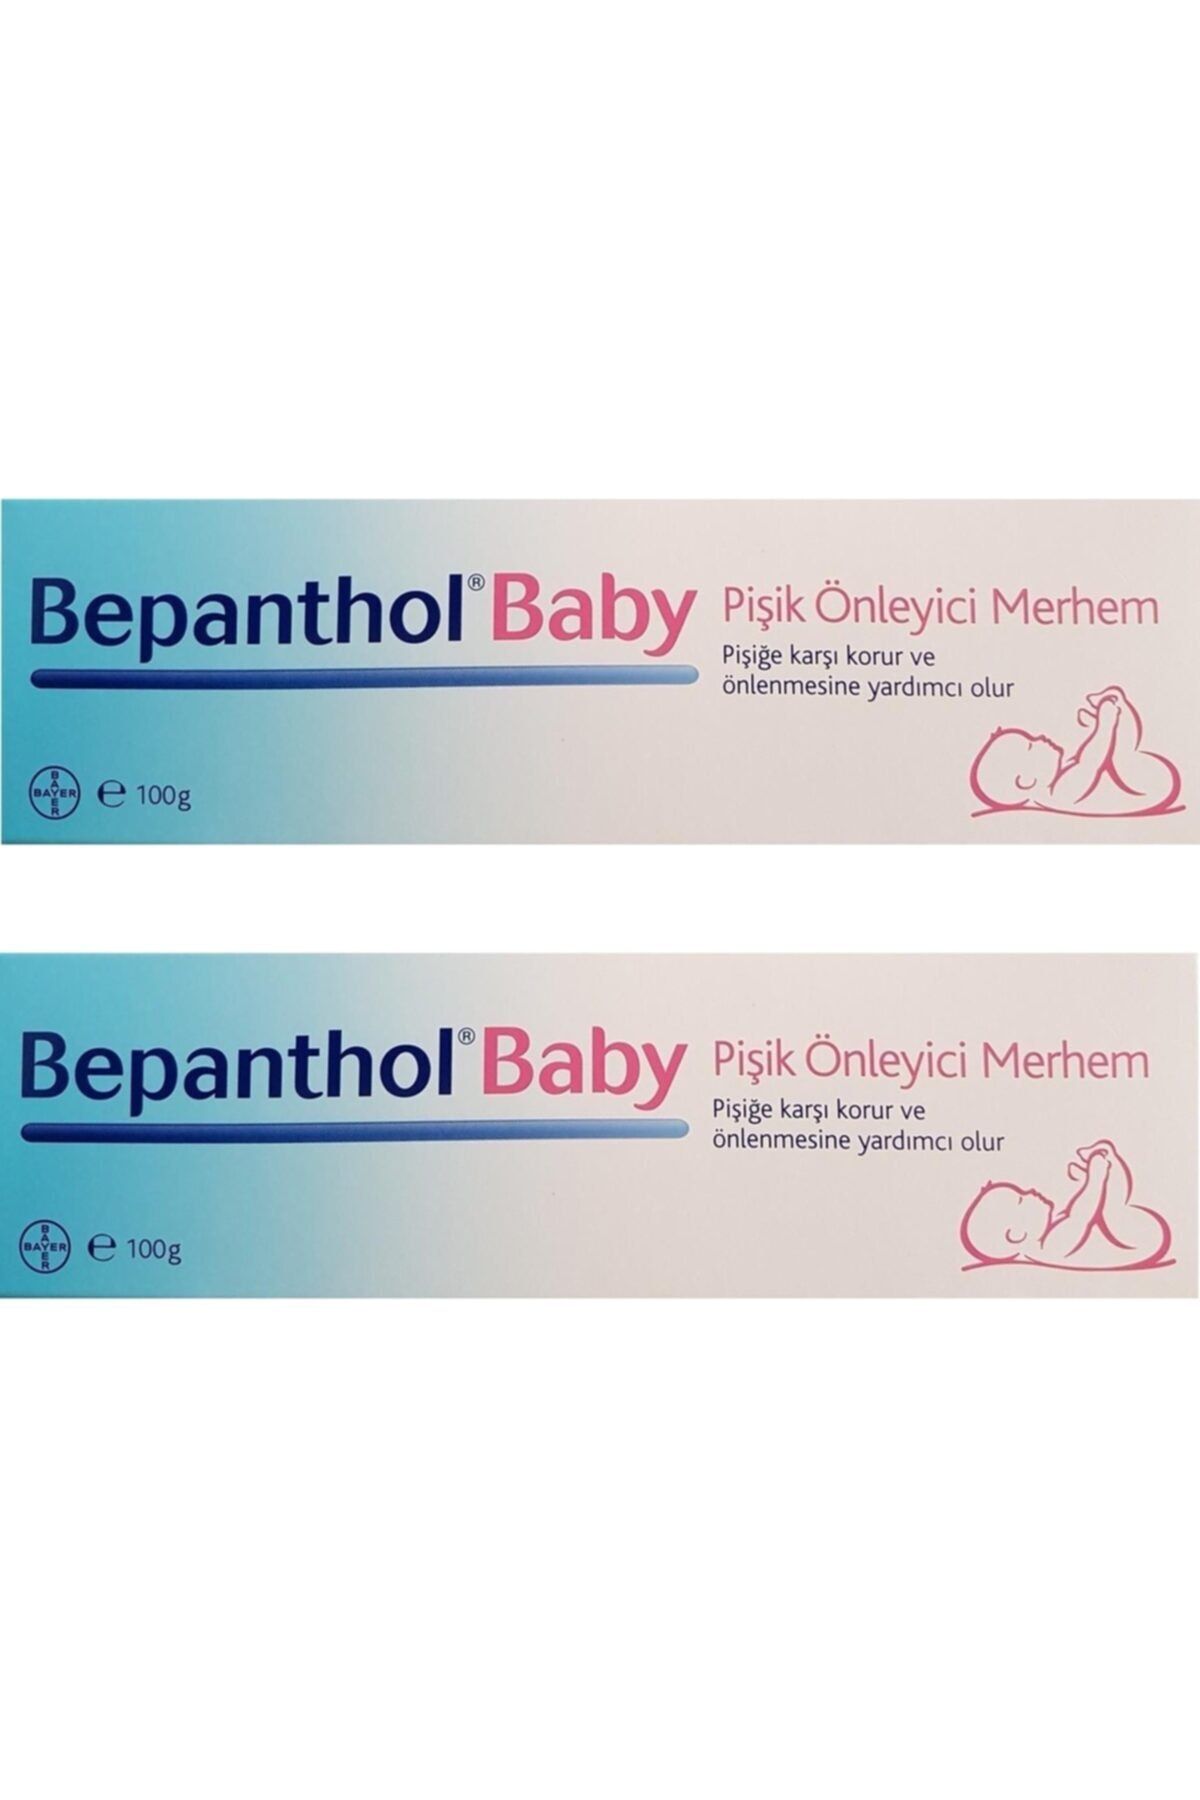 Bepanthol Baby Pişik Önleyici Merhem 100 Gr-2 Adet Skt:12/2021.